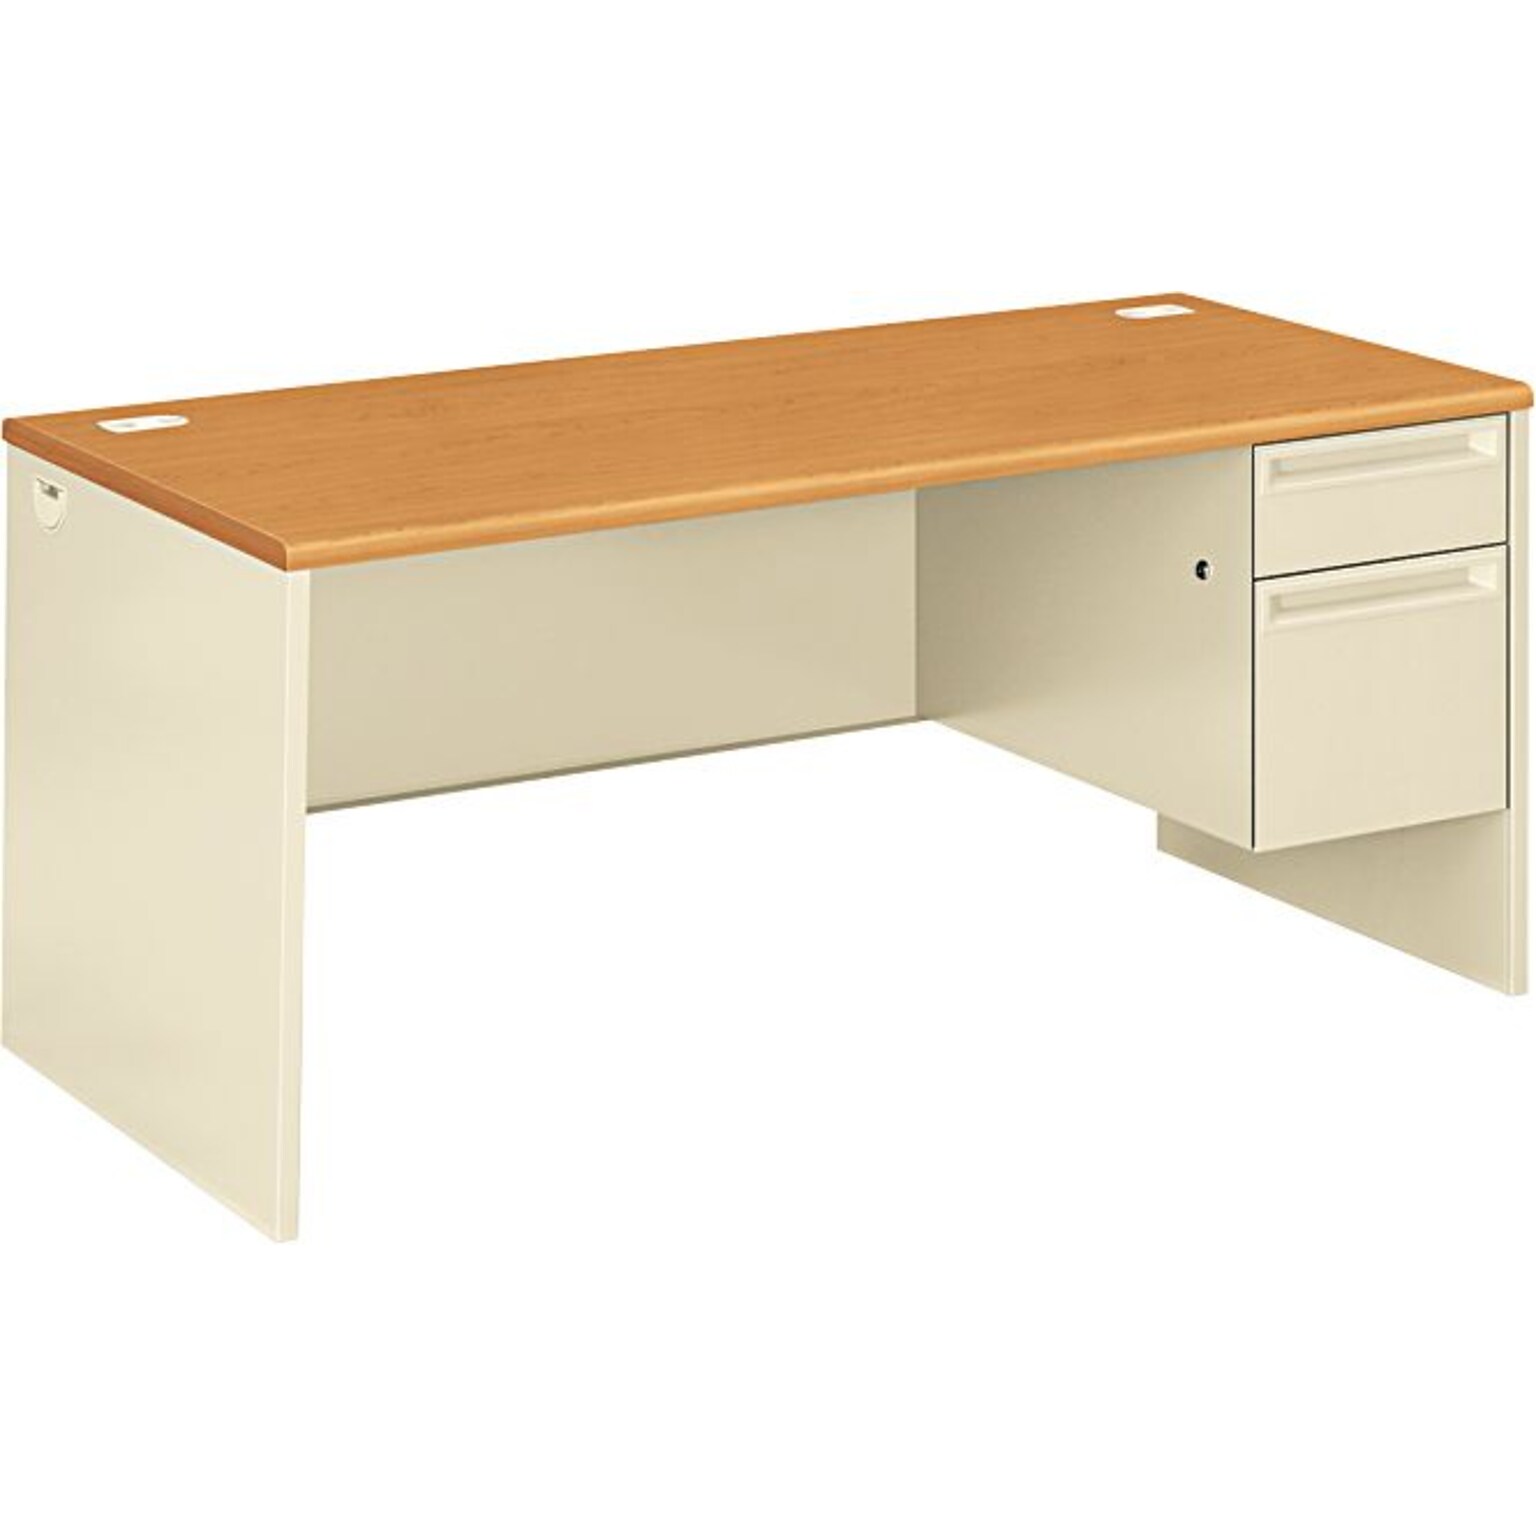 HON 38000 Series 66W L Workstation Right Pedestal Desk, Harvest Oak/Putty, Order Left Return (HON38291RCL)